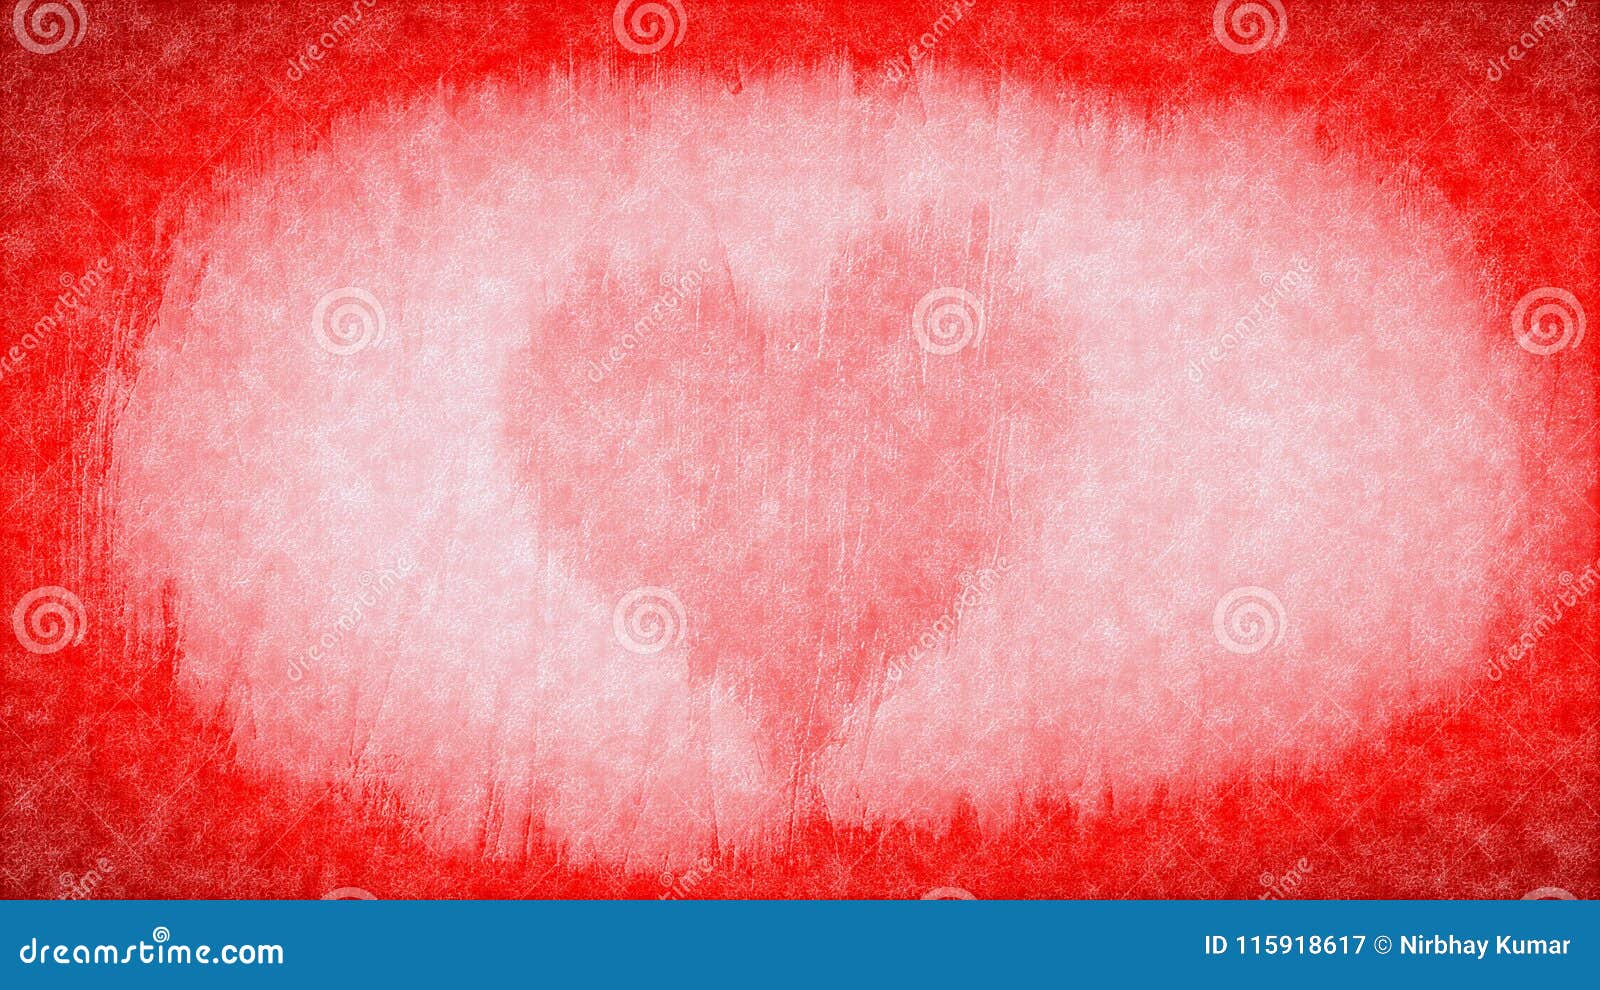 Faded heart HD wallpapers  Pxfuel